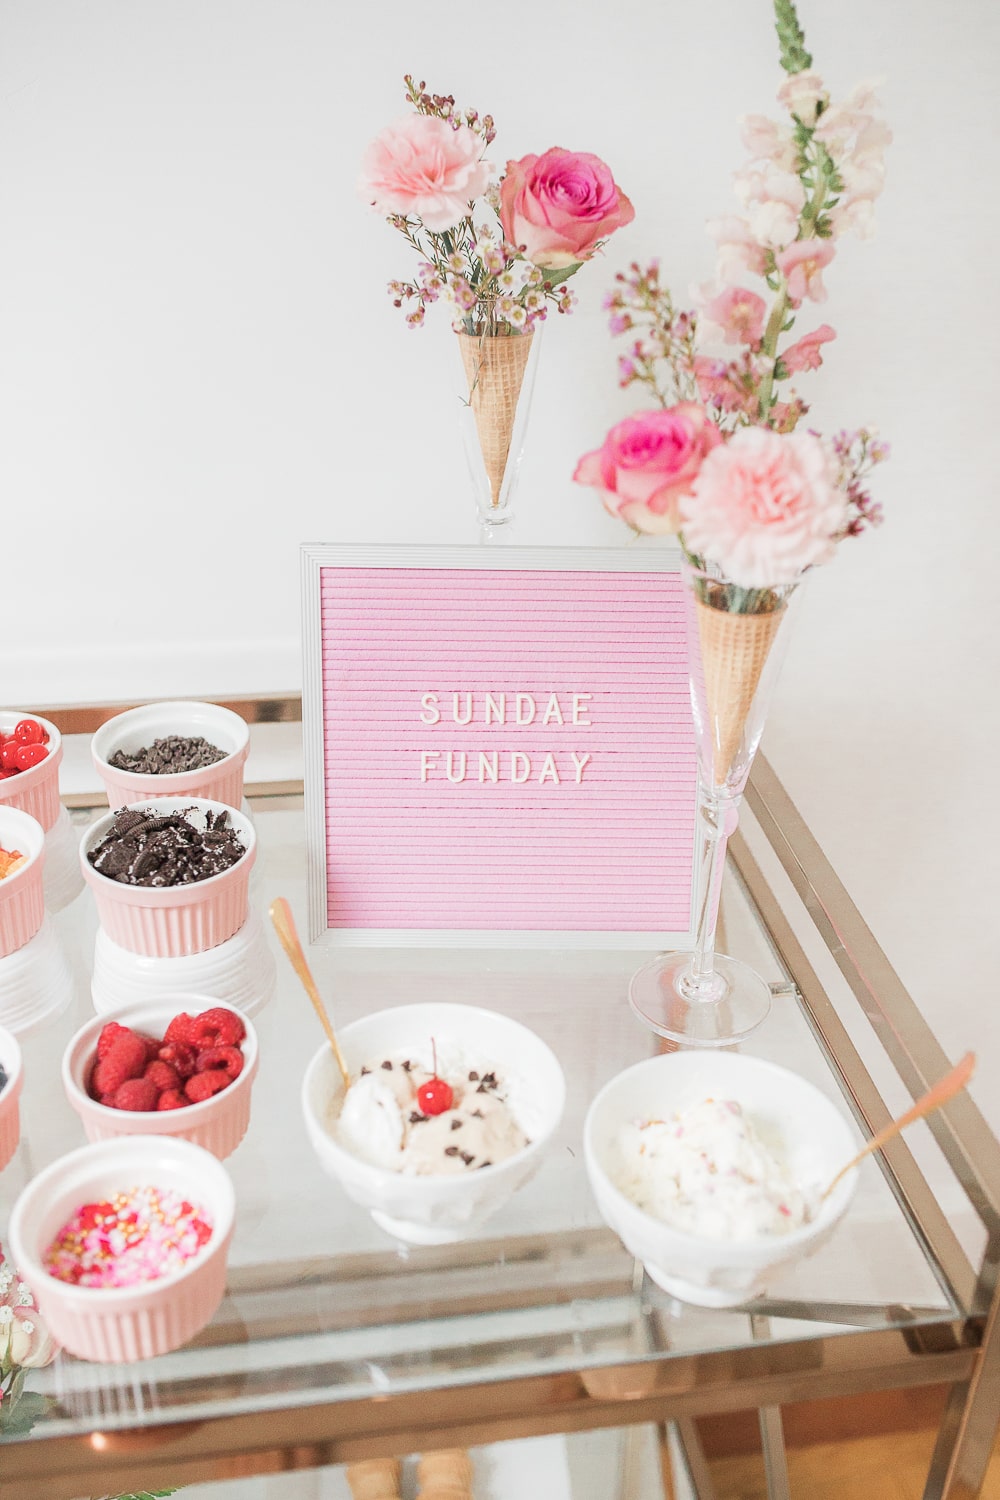 Cute DIY ice cream bar ideas from blogger Stephanie Ziajka on Diary of a Debutante